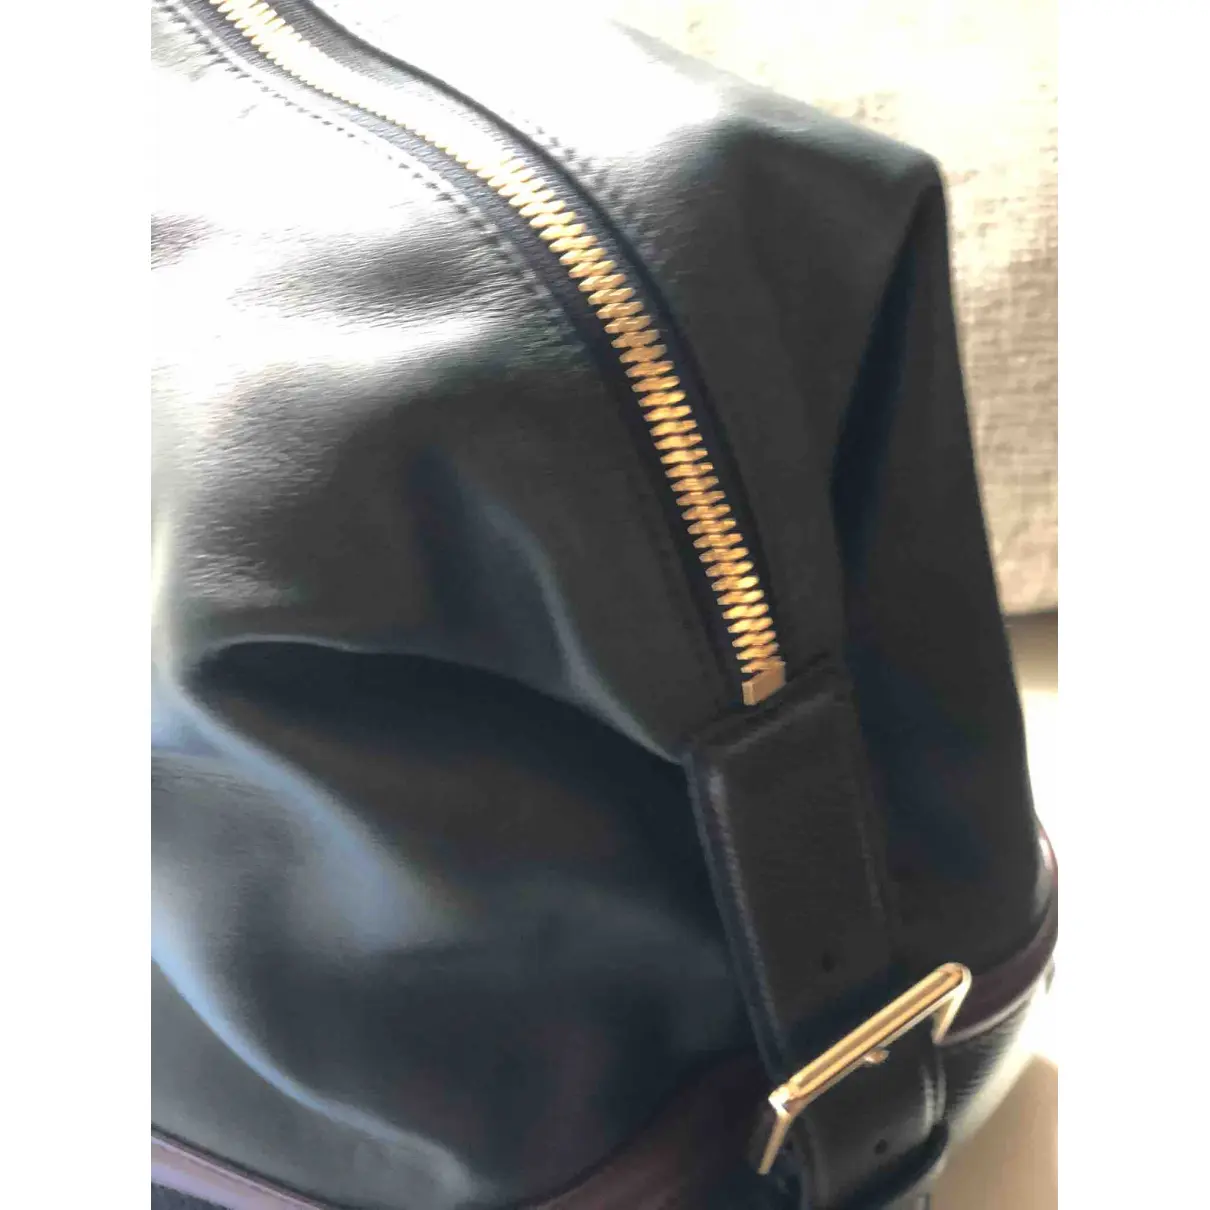 Buy Smythson Leather travel bag online